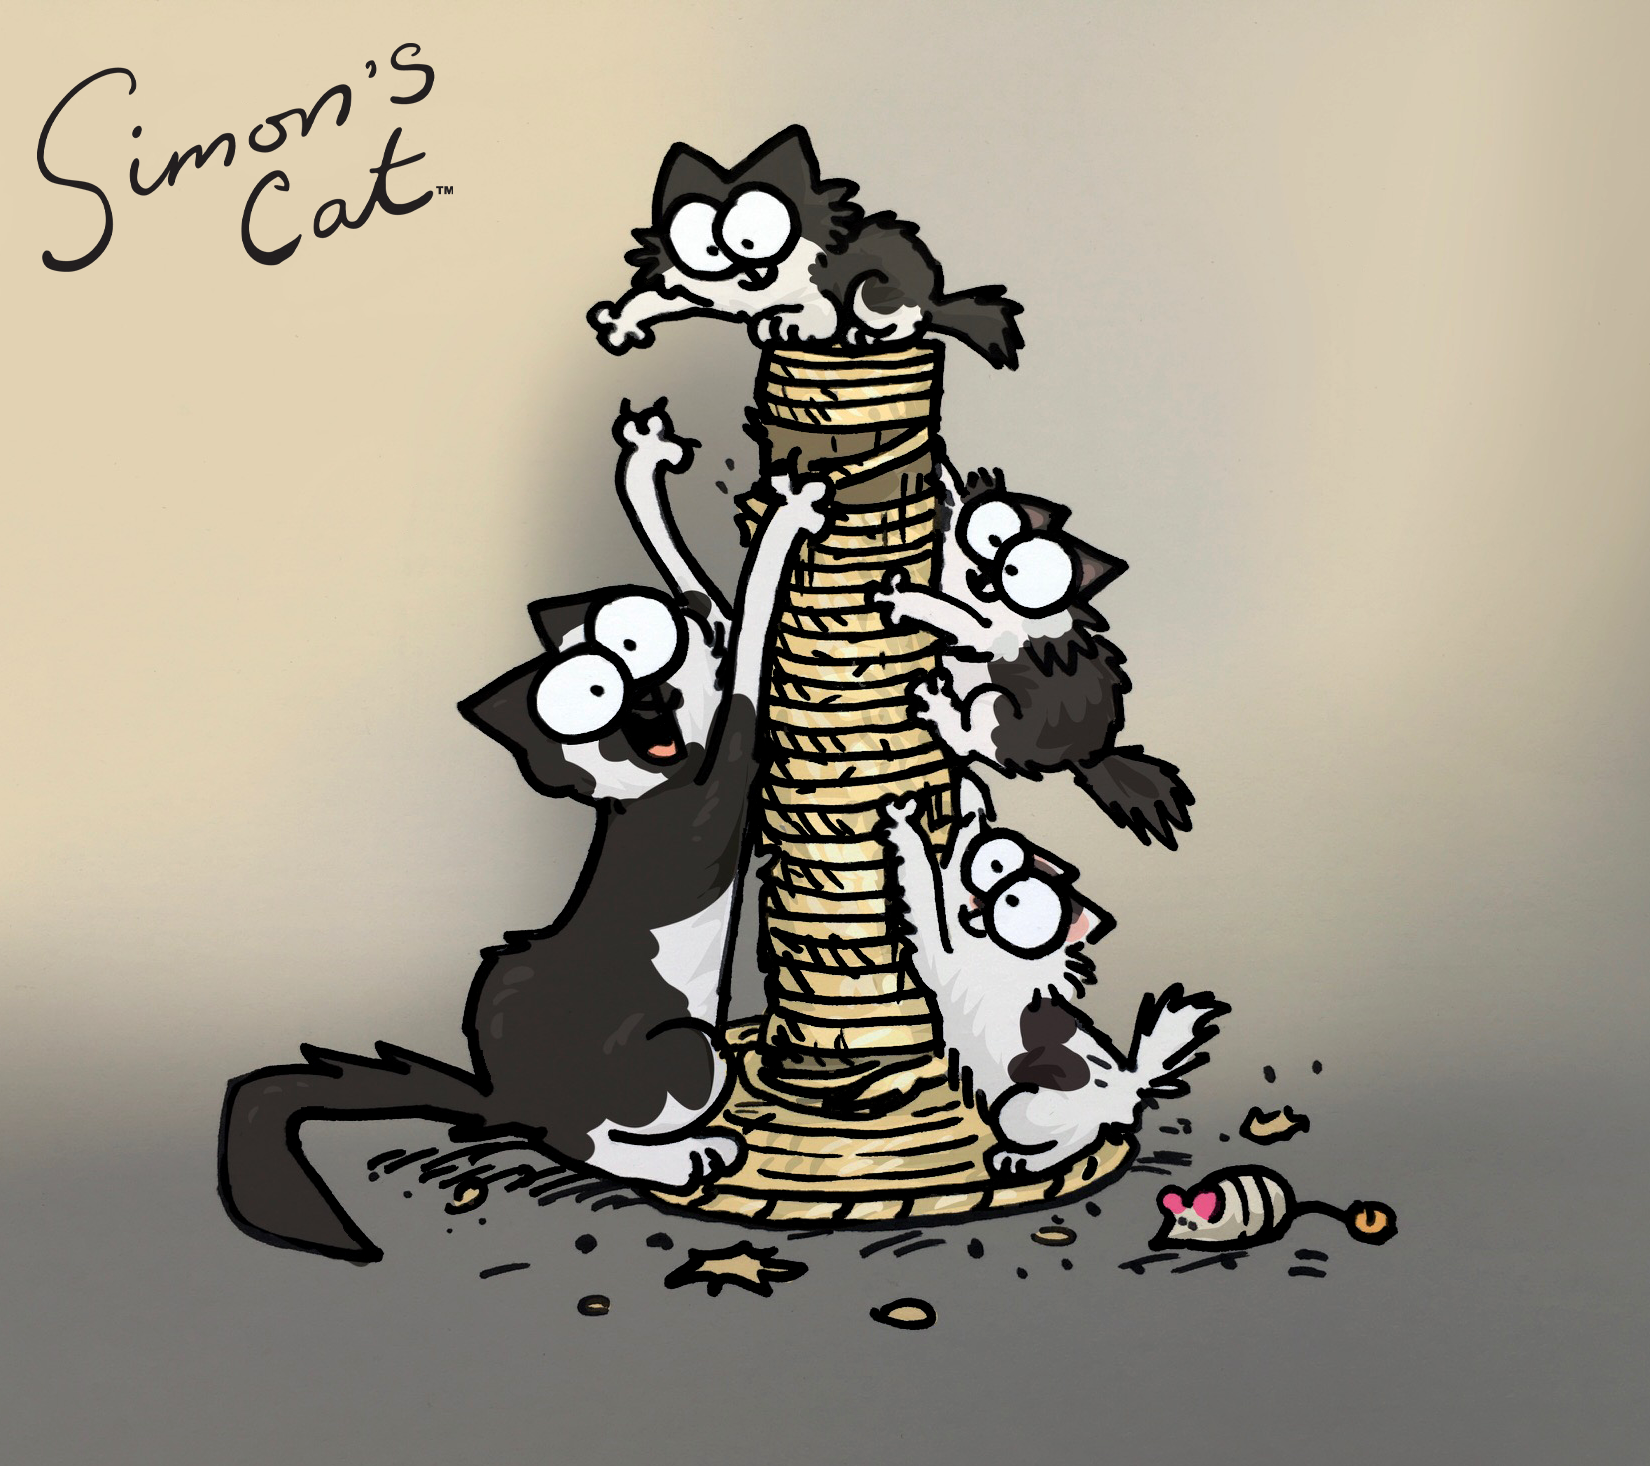 Sponsorkat Princess en haar schattige kittens zijn getekend door de beroemde illustrator Simon Tofield